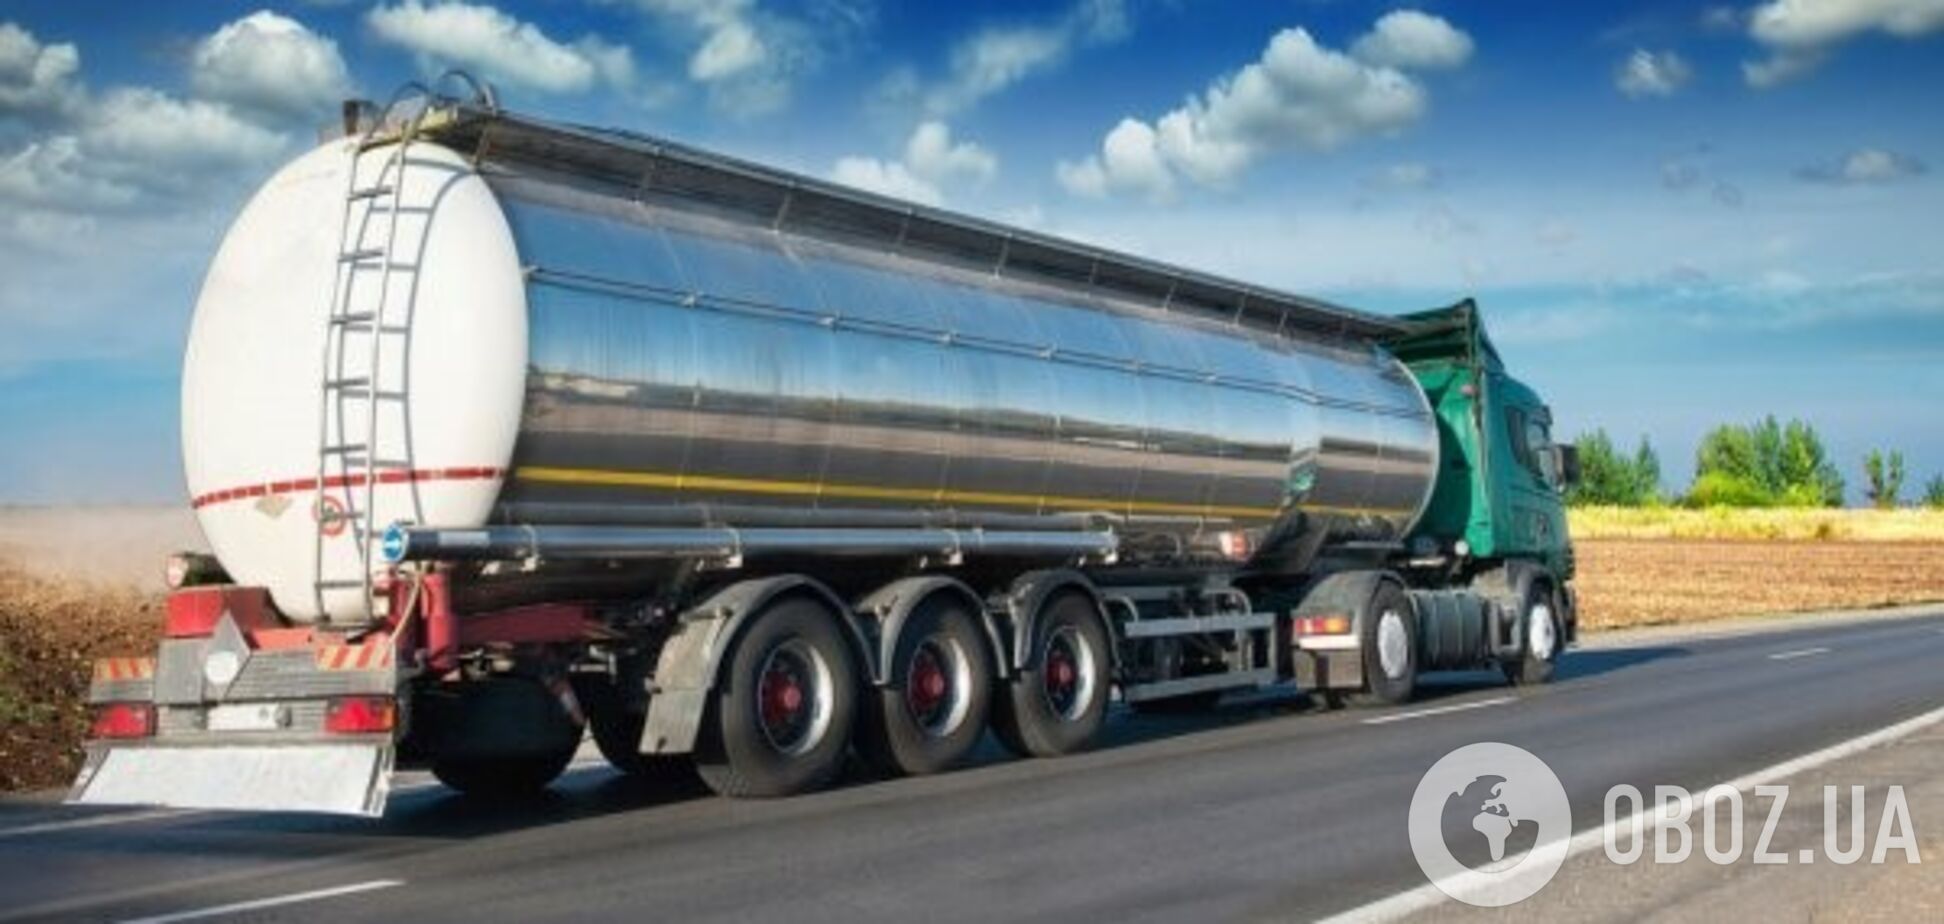 Украина и Польша договорились об отмене разрешений для перевозчиков топлива